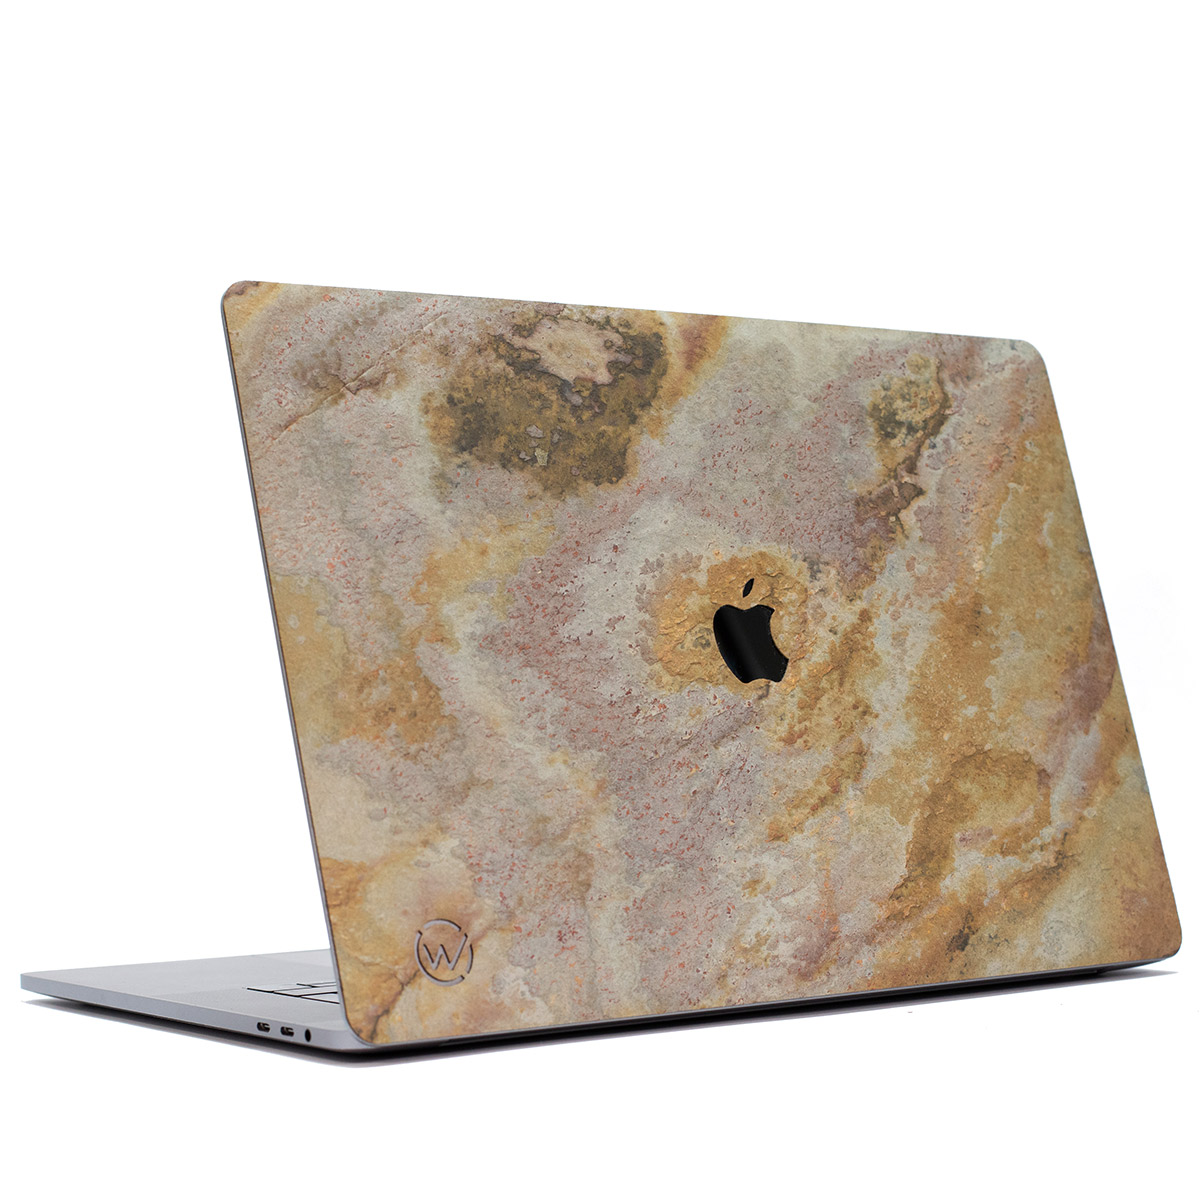 Notre guide des accessoires indispensables pour votre nouveau MacBook !